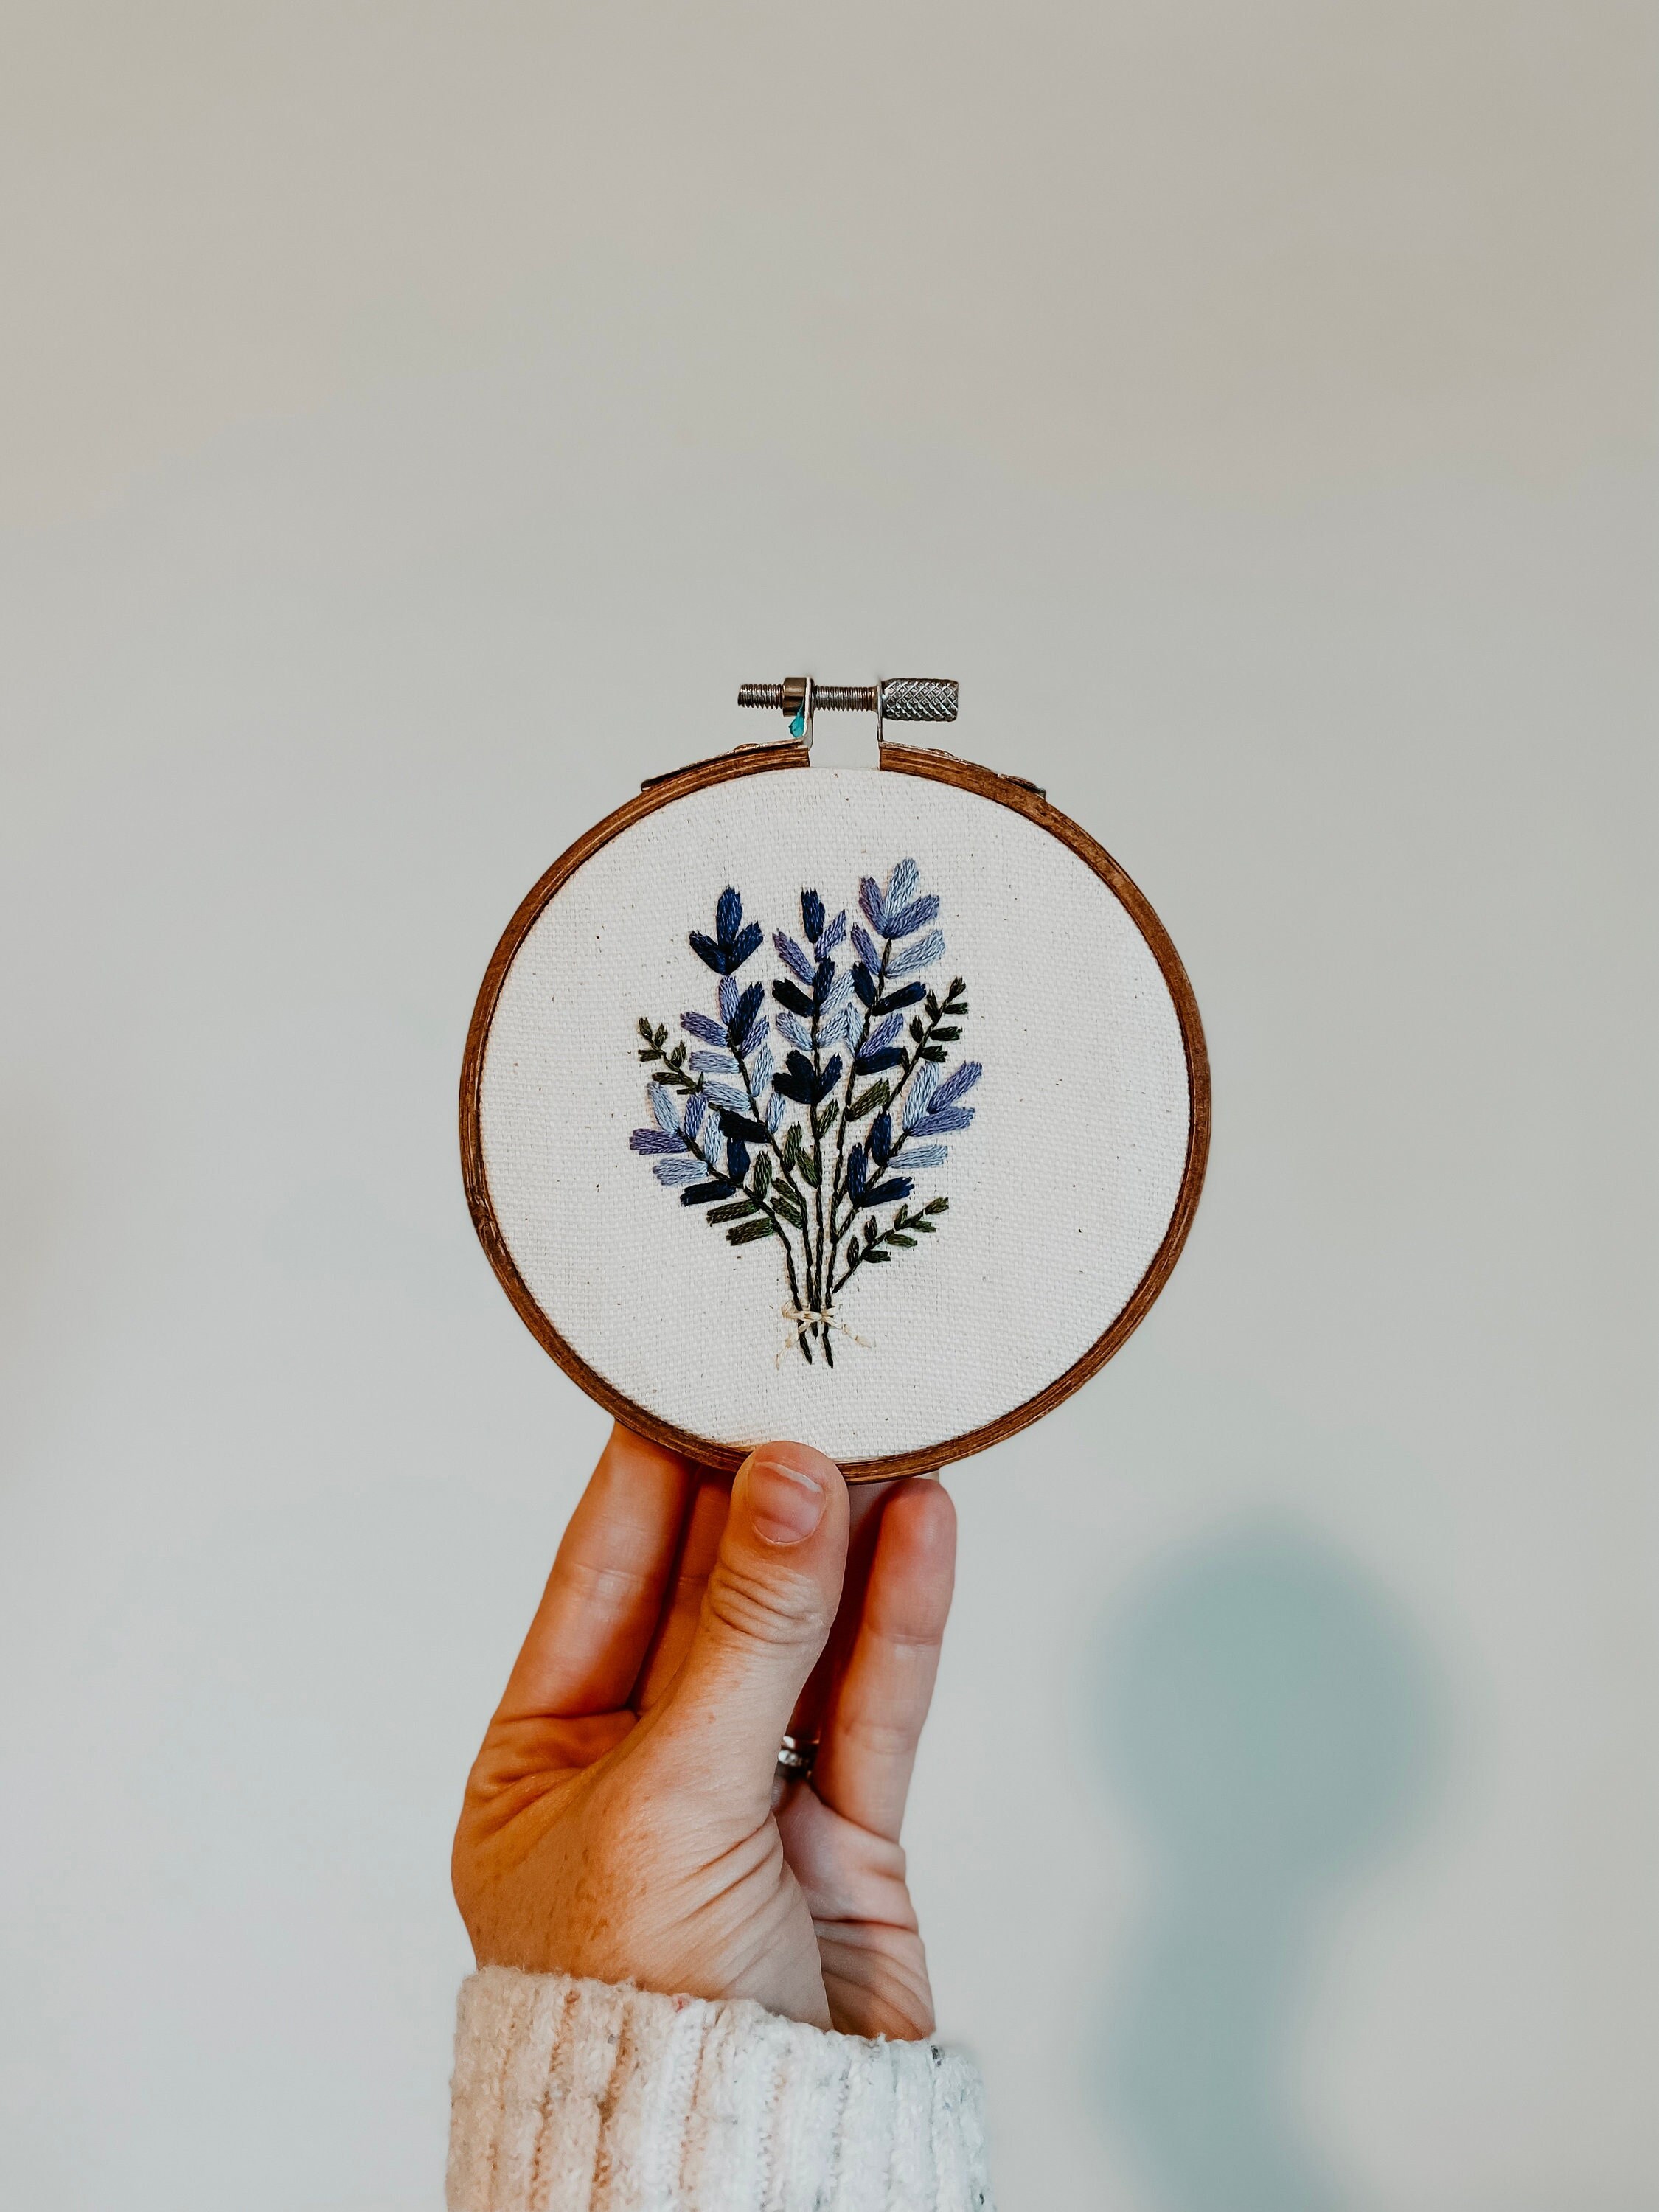 Beginner's Embroidery Kit: Lavender Wildflower 4 Hoop 